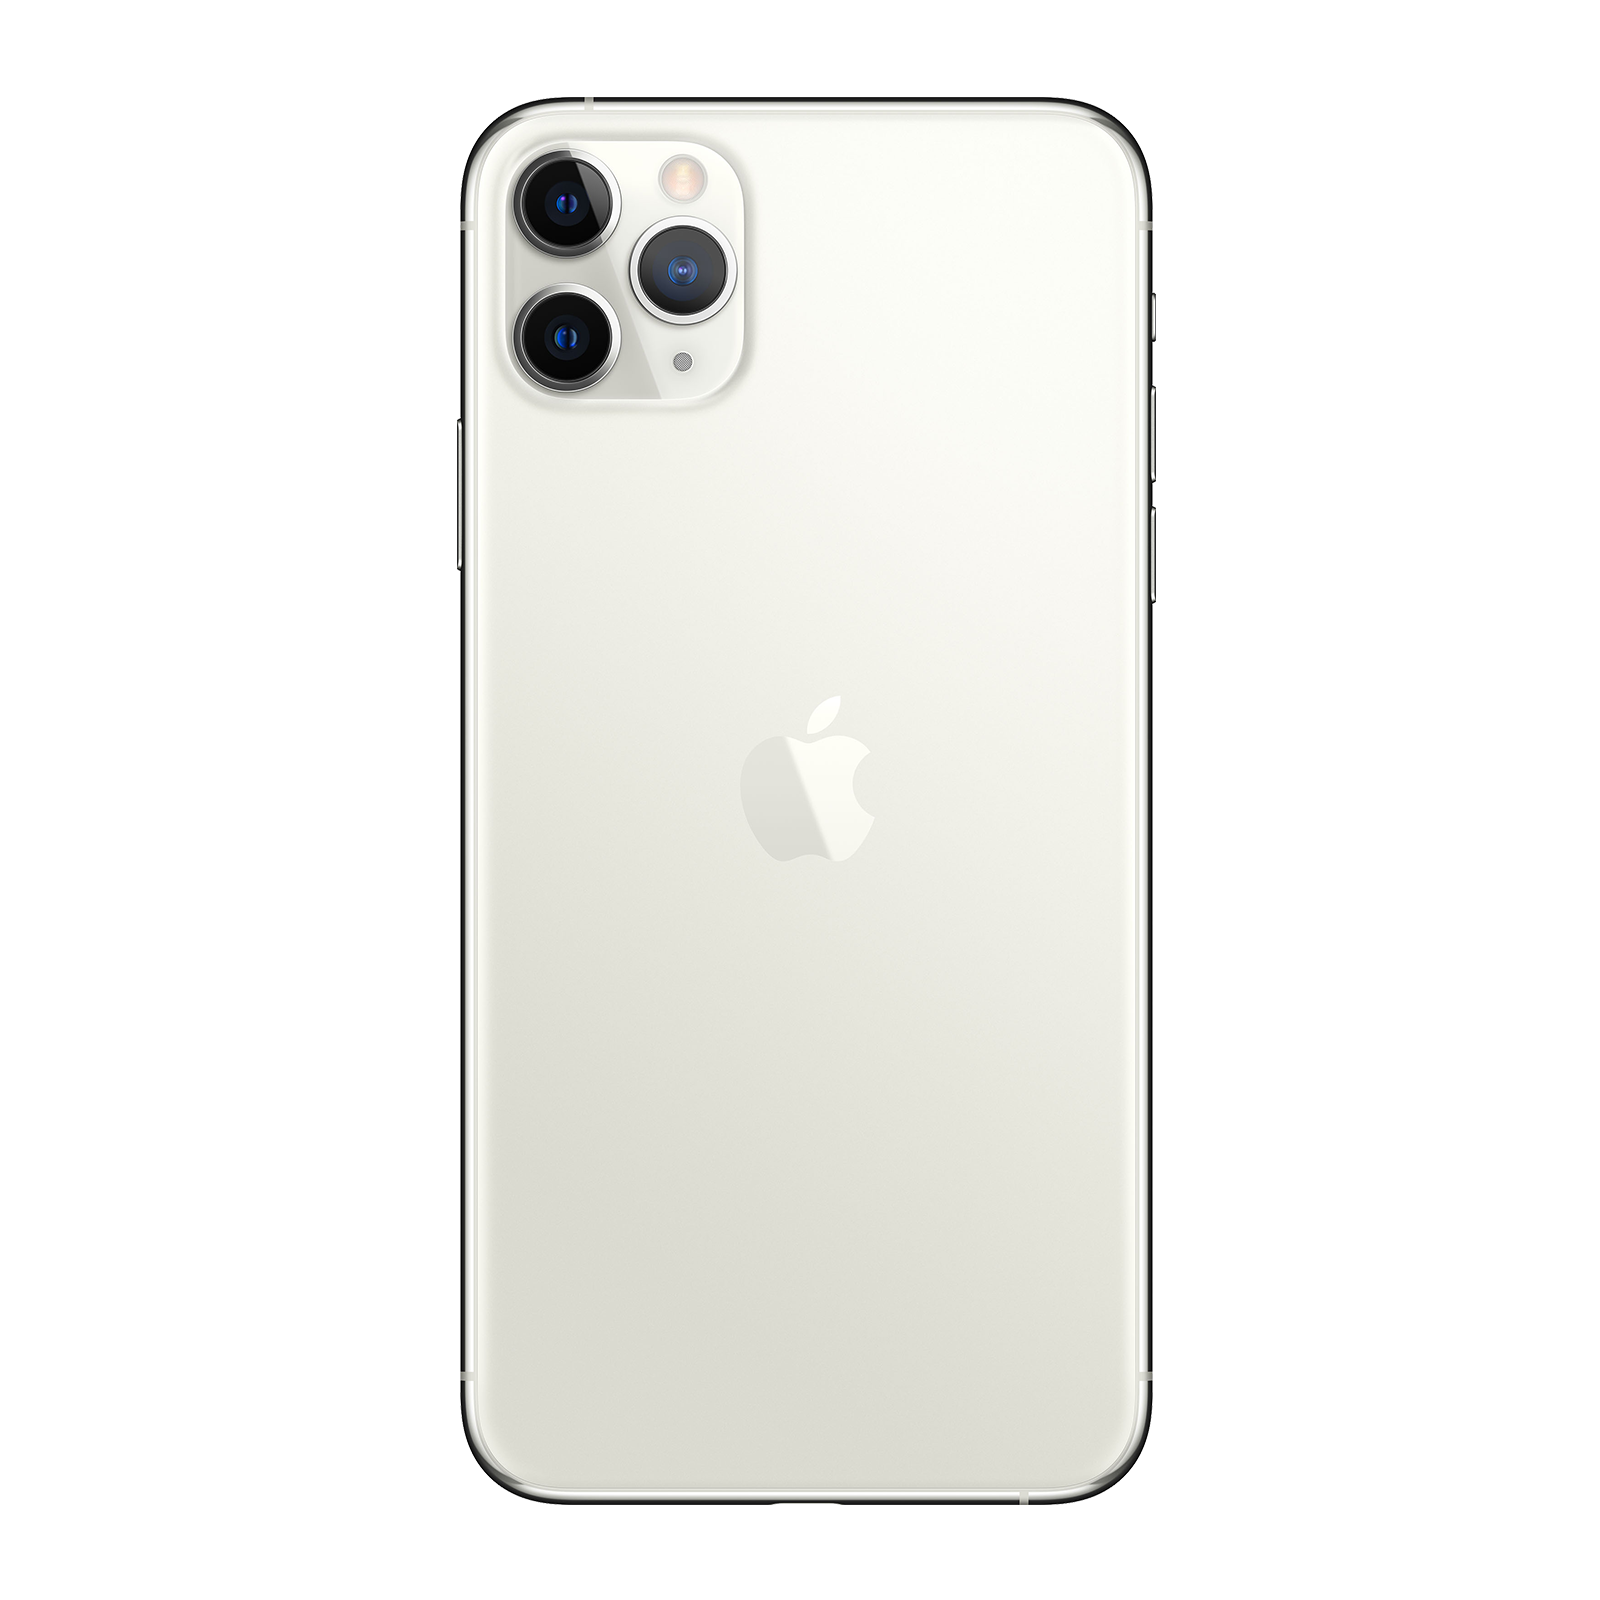 Apple iPhone 11 Pro Max 64GB Argento Come Nuovo Sbloccato